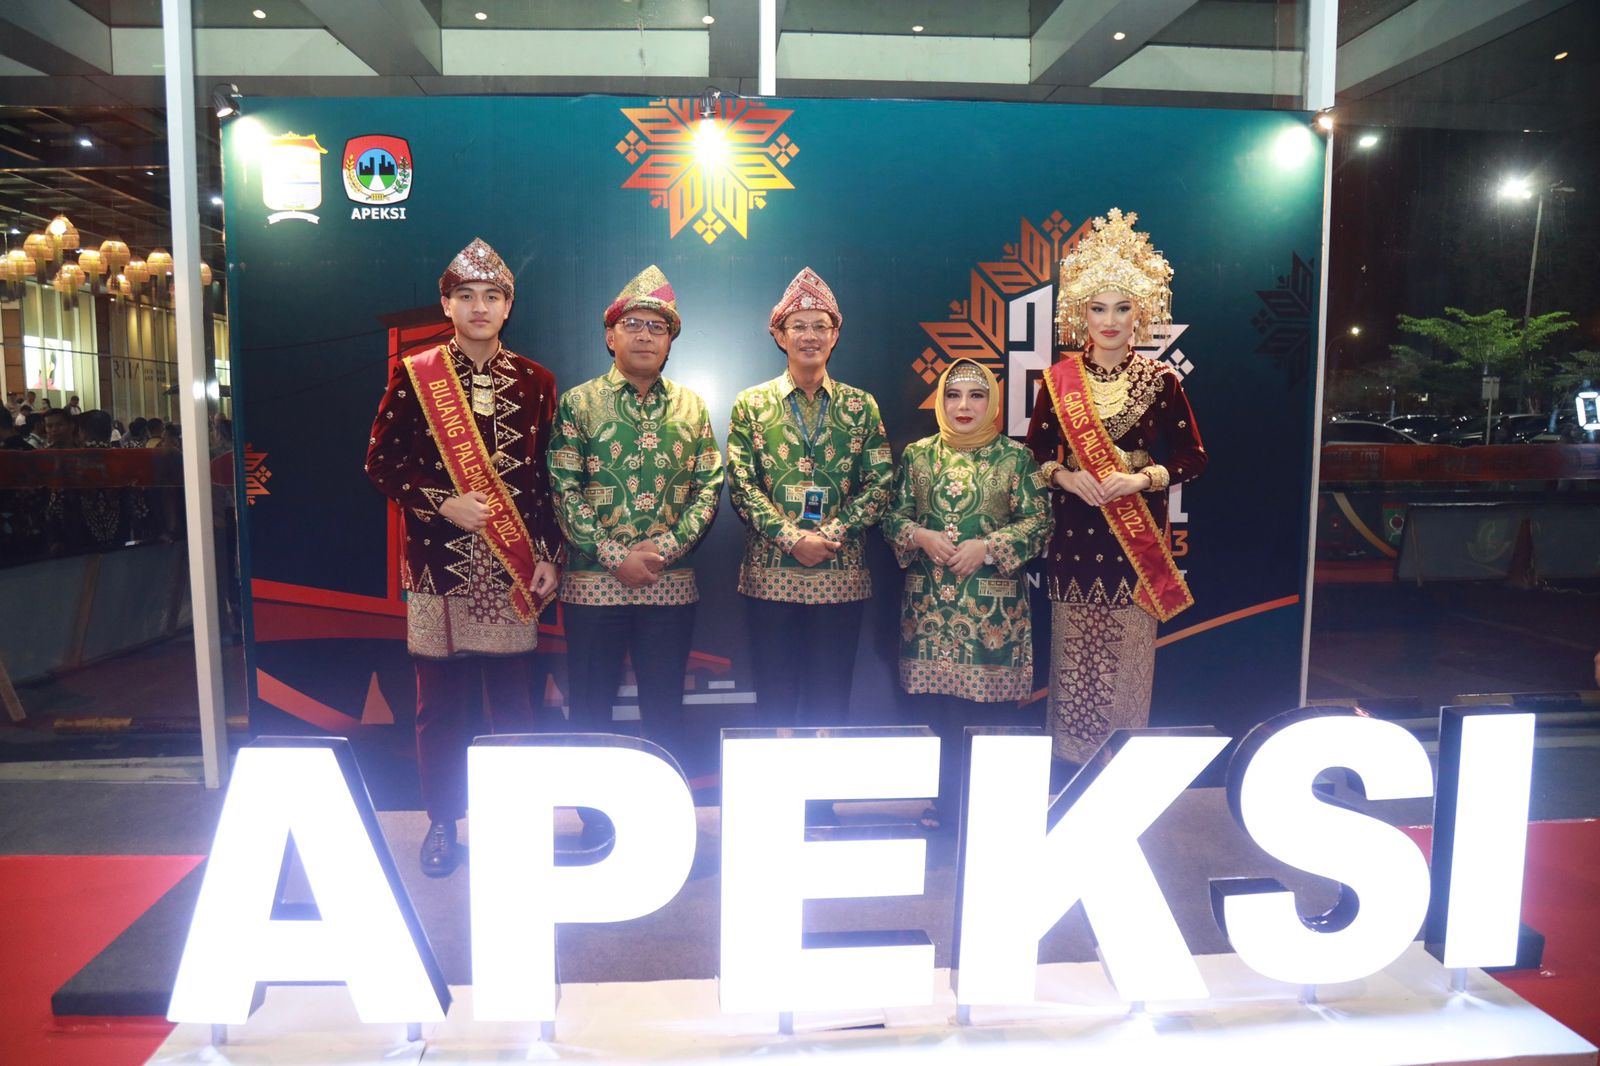 Wali Kota Makassar Hadiri Gala Dinner Puncak Syukuran HUT Ke 23 APEKSI di Palembang